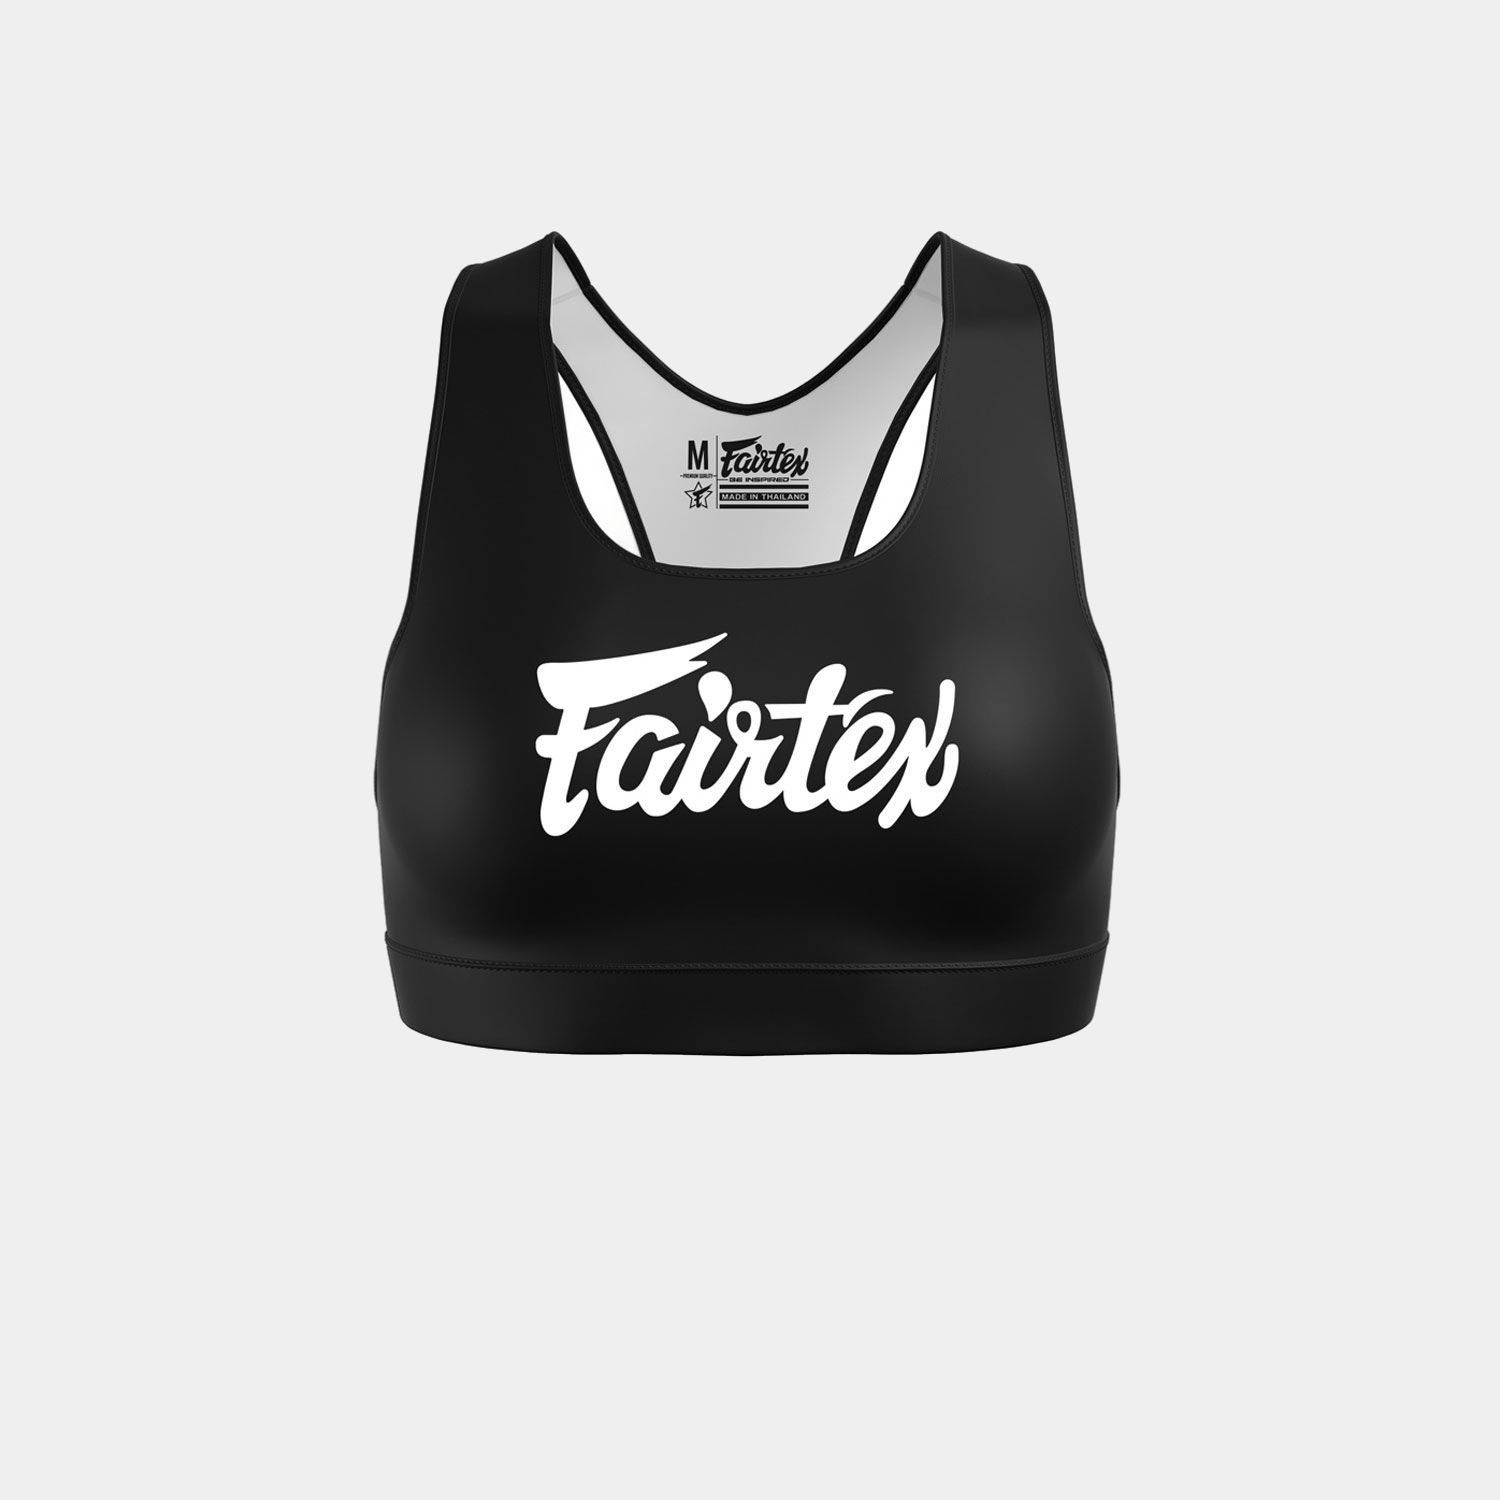 Fairtex SB1 Classic Black & White Sports Bra